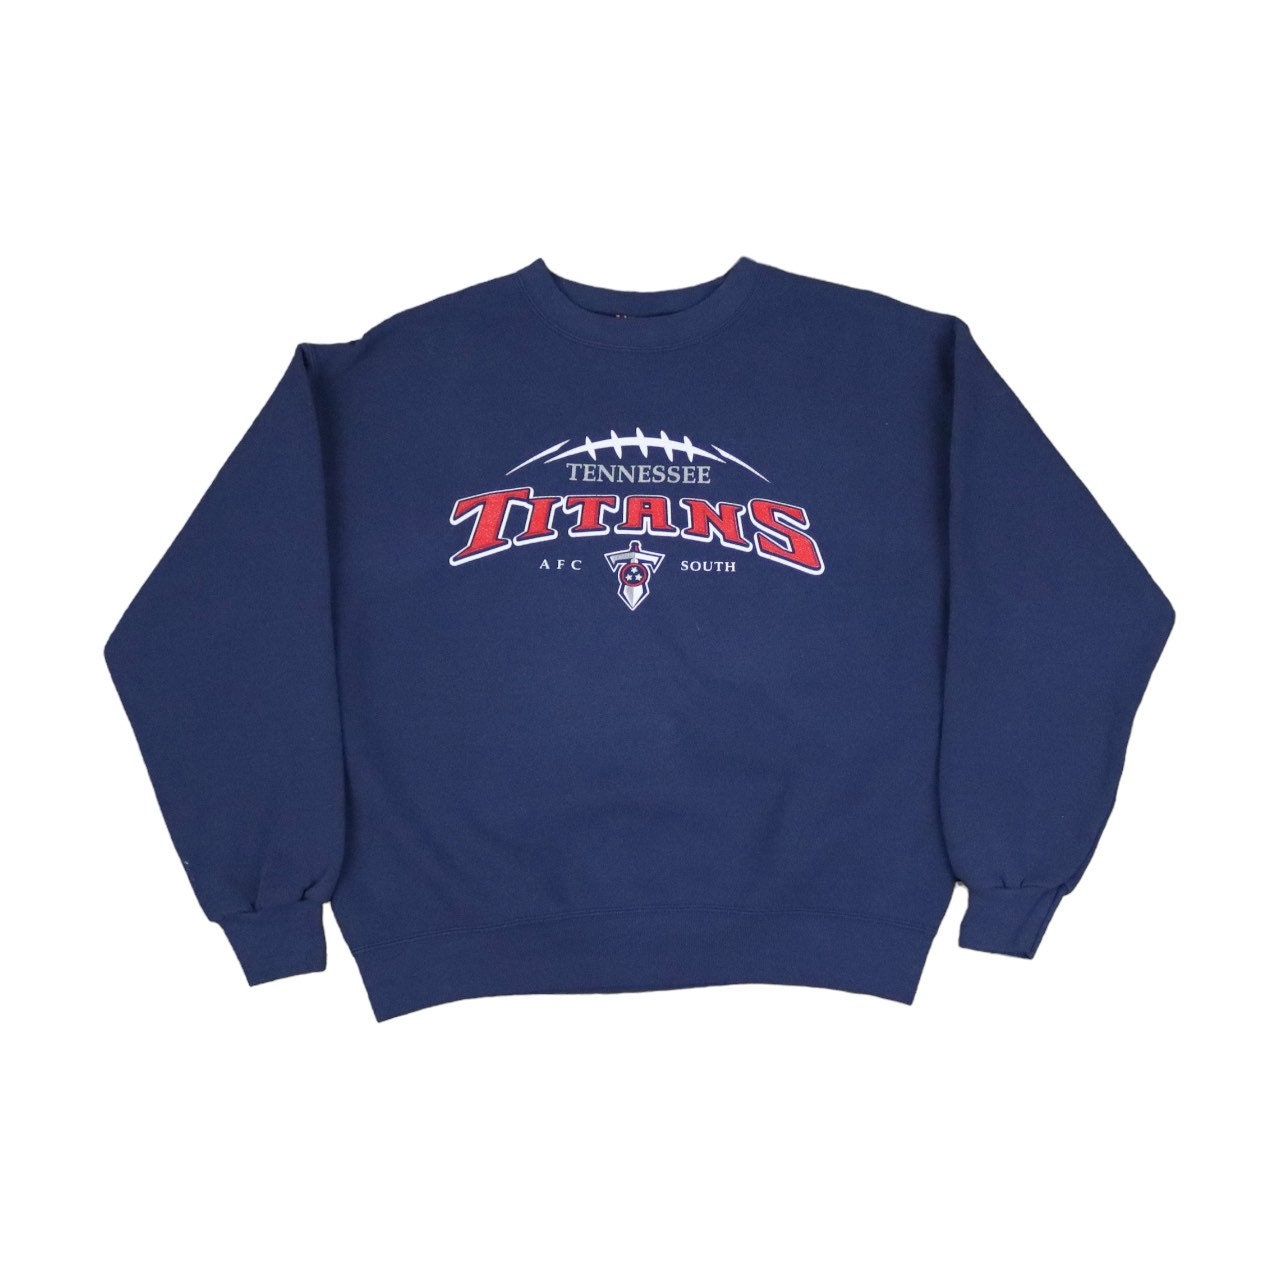 Vintage 90s Houston Oilers Crewneck Sweatshirt Tennessee Titans